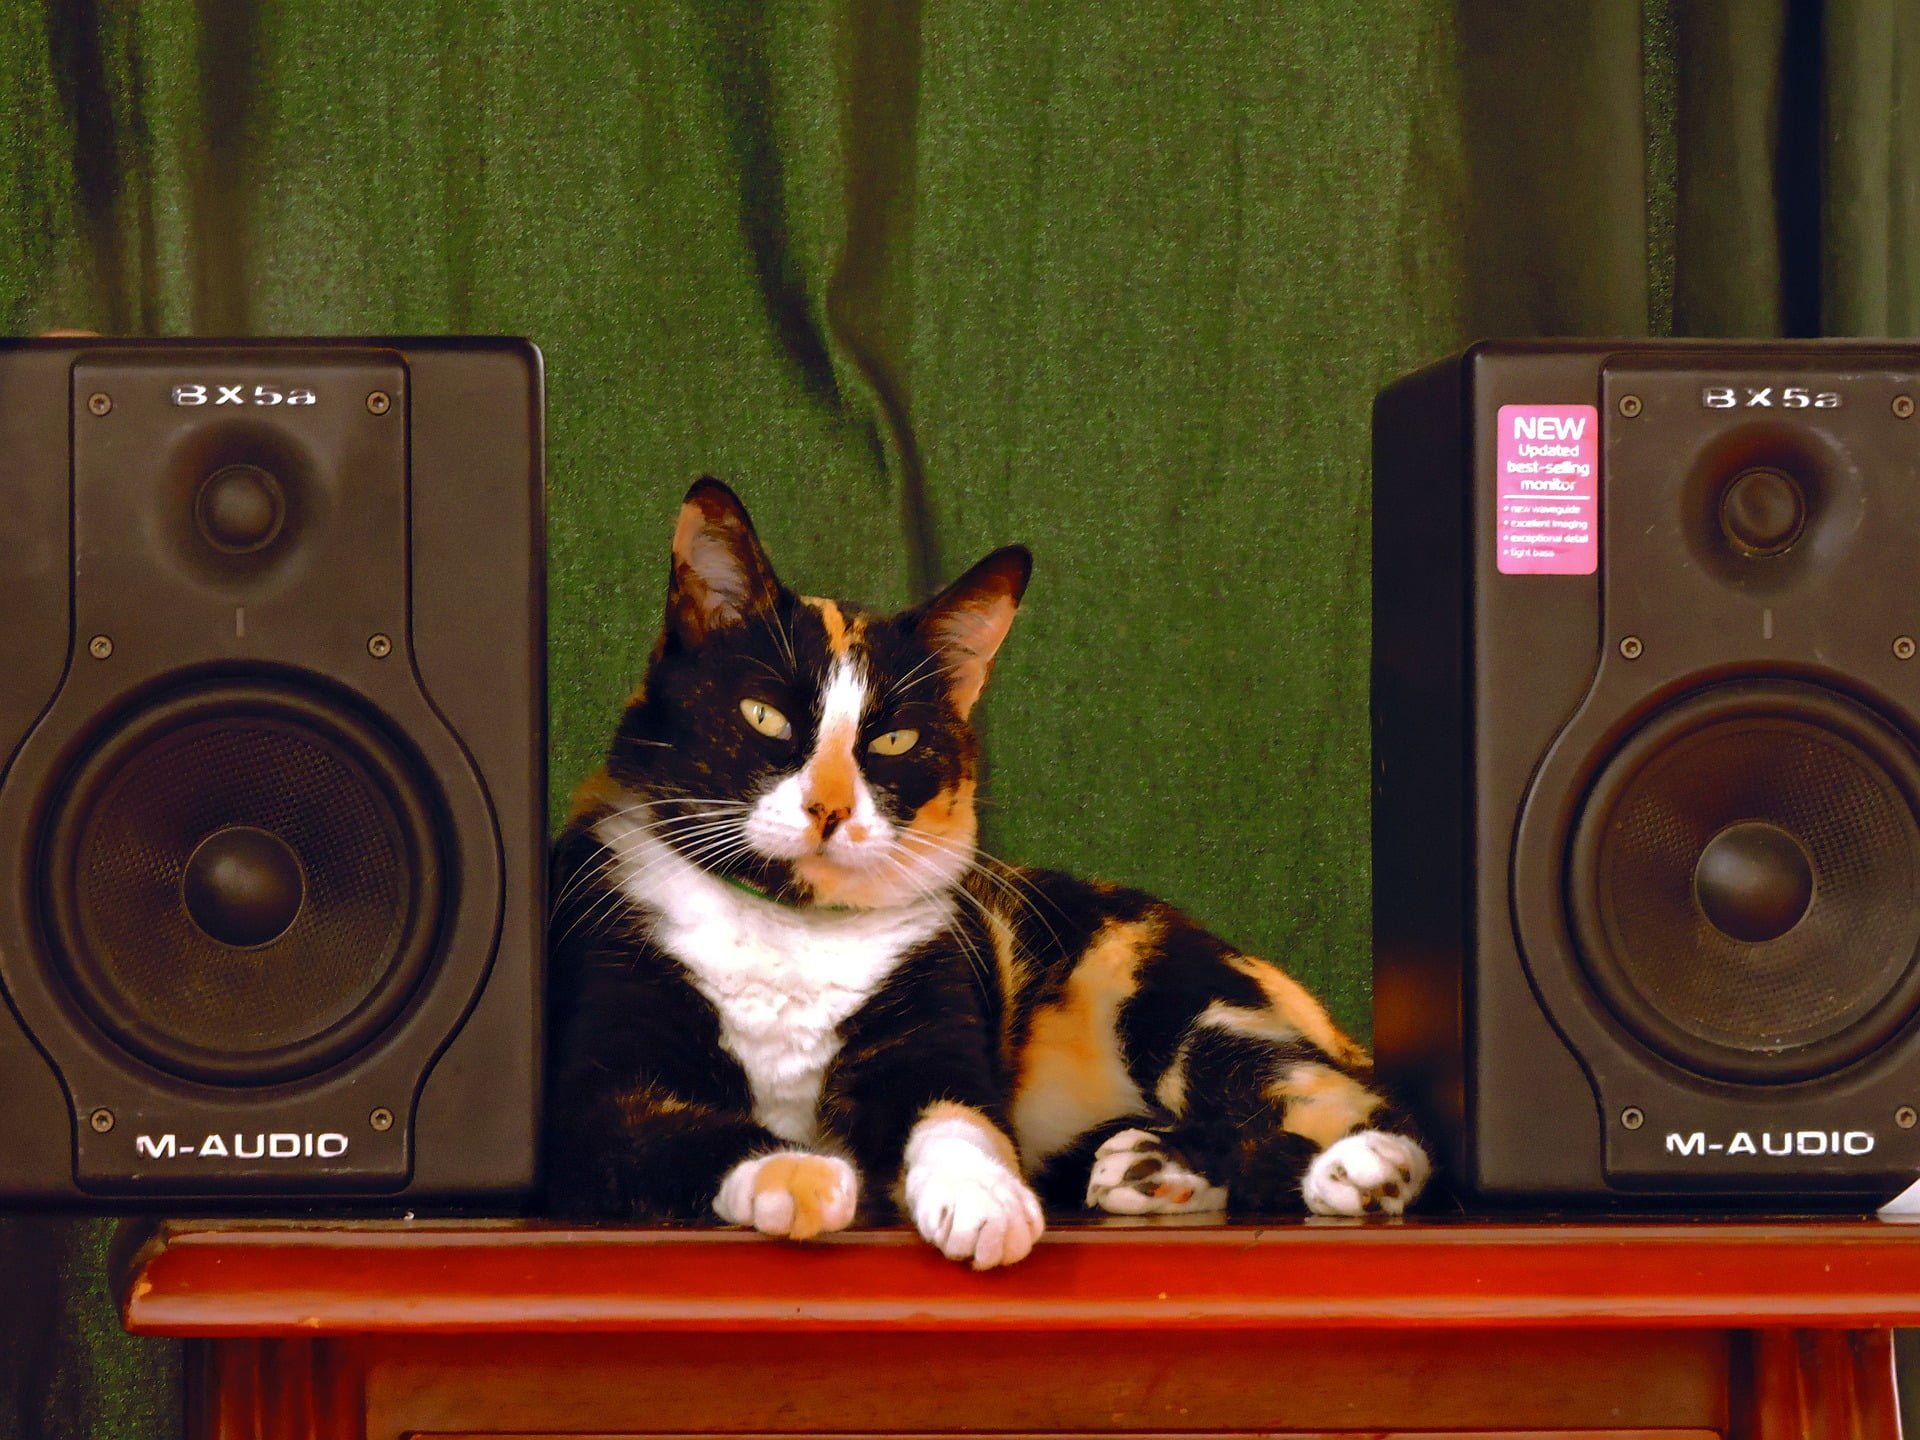 ¿A los gatos les gusta la música? ¿De qué tipo disfrutan?